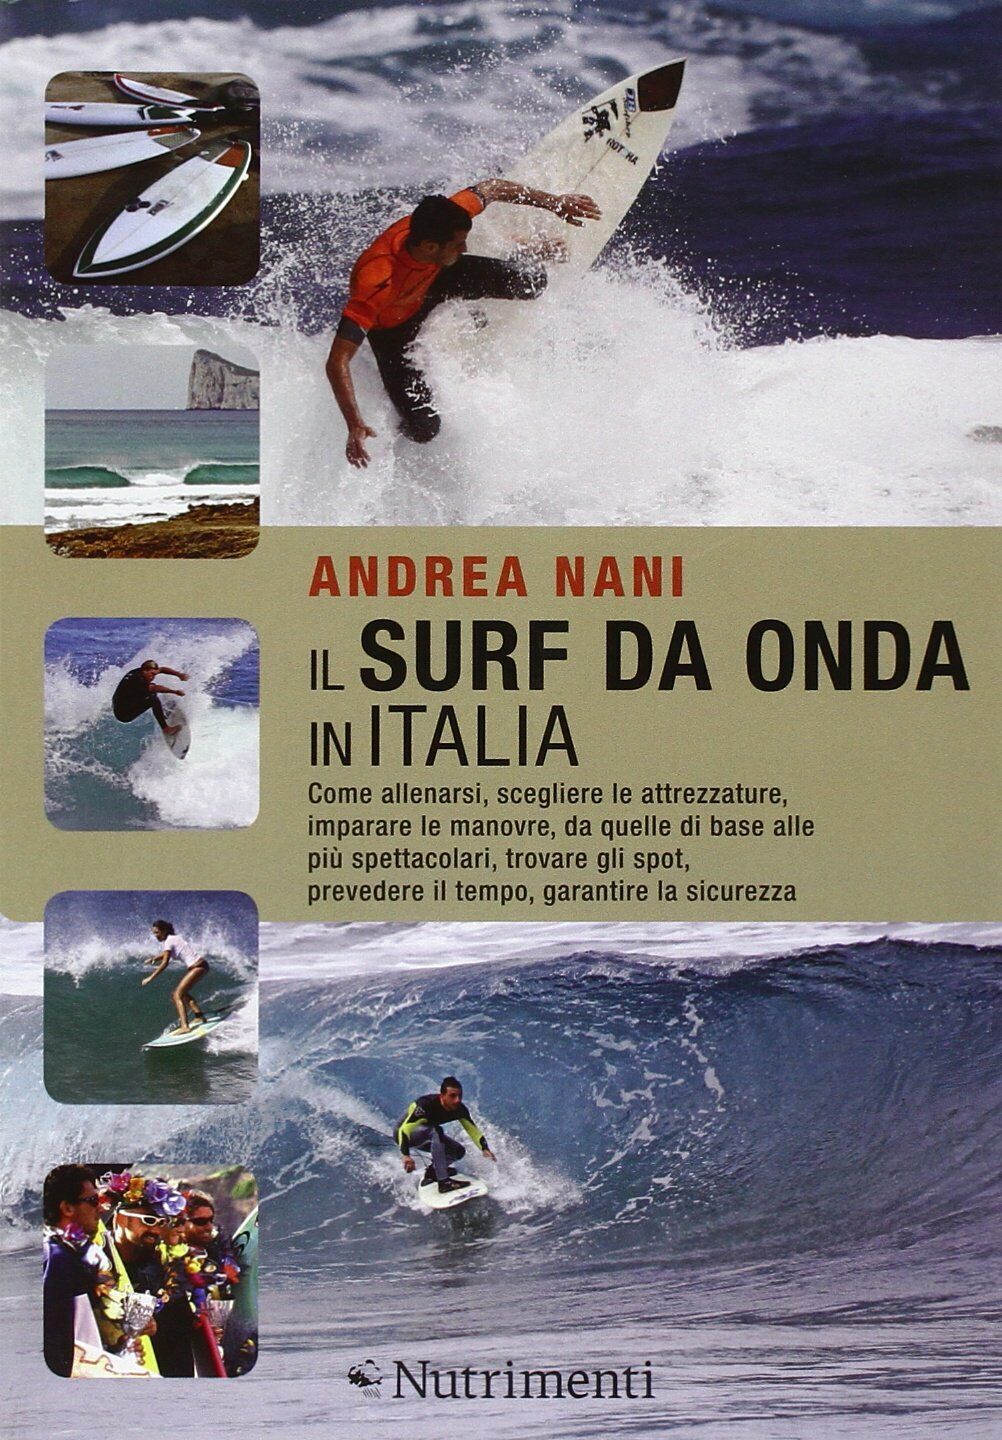 Il surf da onda in Italia - Andrea Nani - nutrimenti, 2011